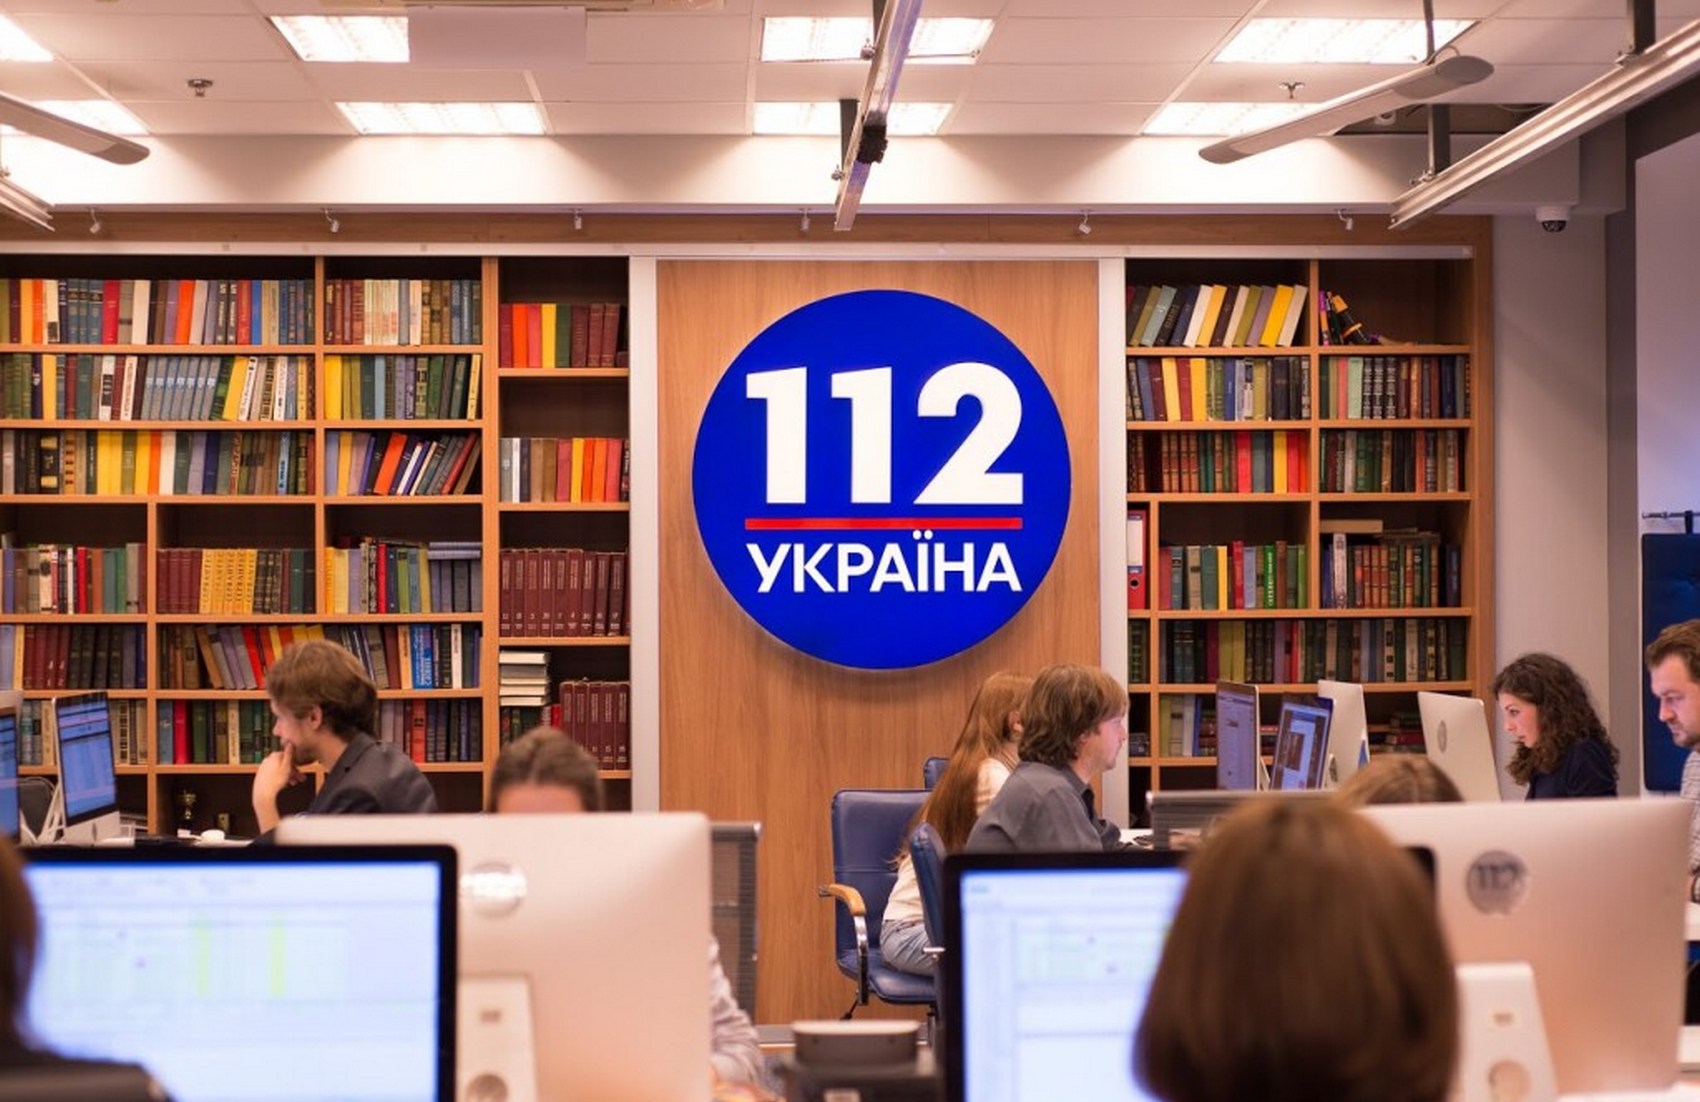 Нацсовет обратился в суд с просьбой аннулировать лицензию телеканалу «112 Украина»